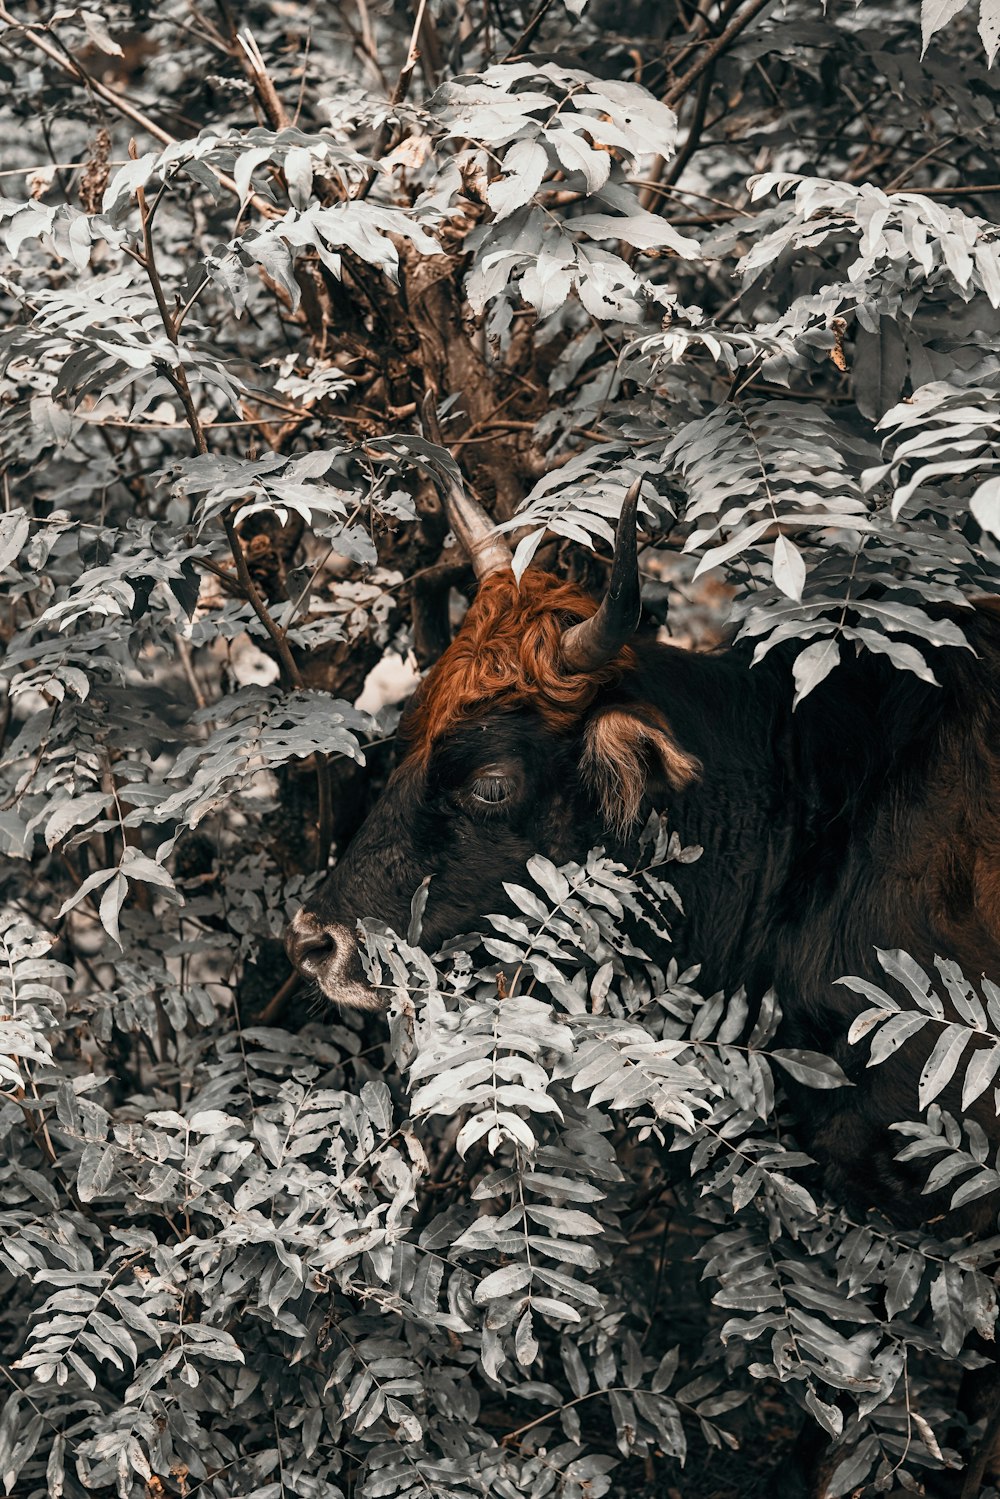 brown horned animal beside gray plant